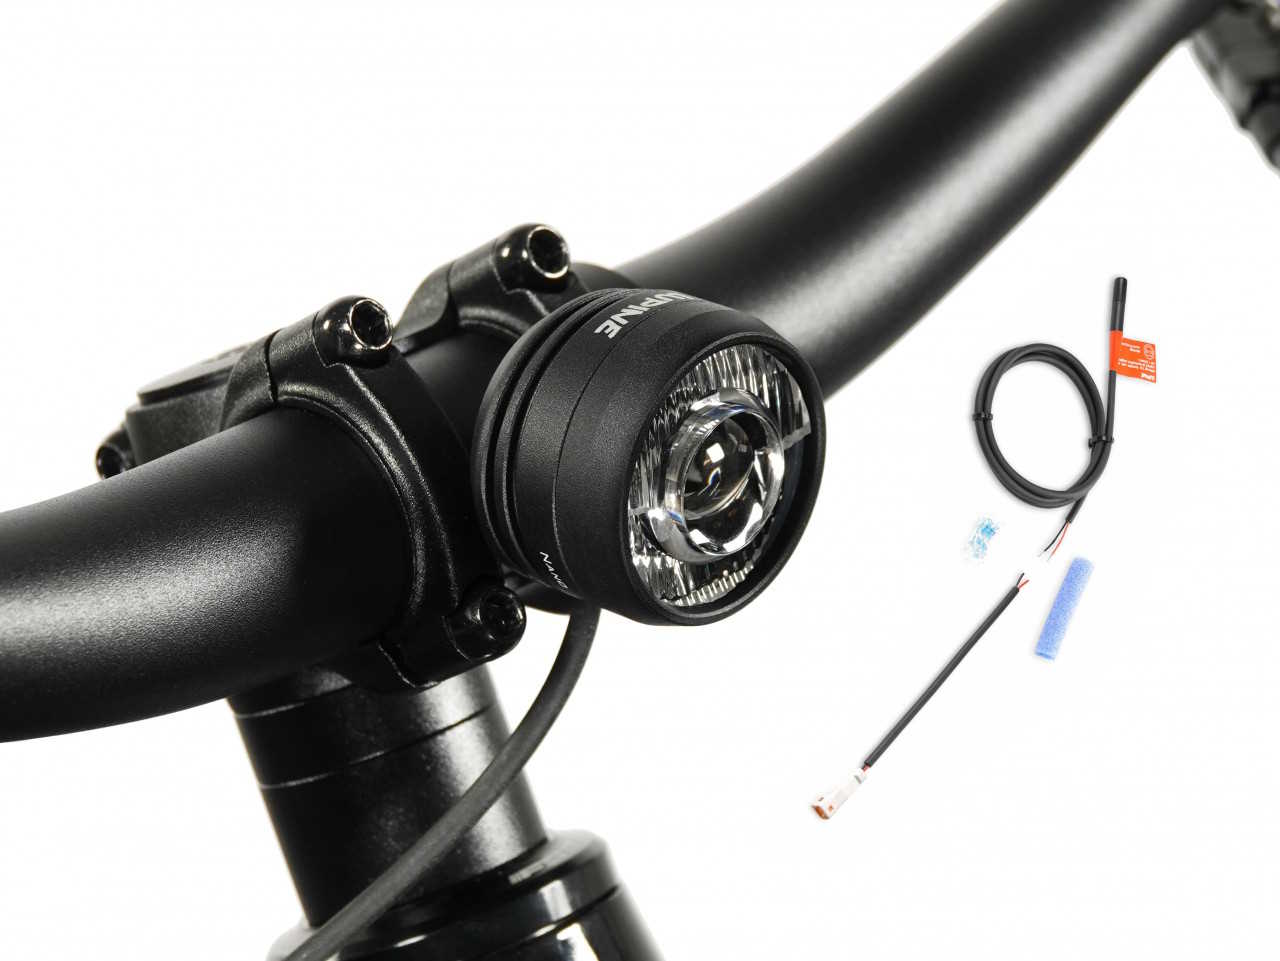 Produktbild von Lupine SL Nano für E-Bikes mit Giant Motor, E-Bike Beleuchtung mit 900 Lumen Fernlicht, Lenkerhalter 31,8mm + Kabelfernbedienung